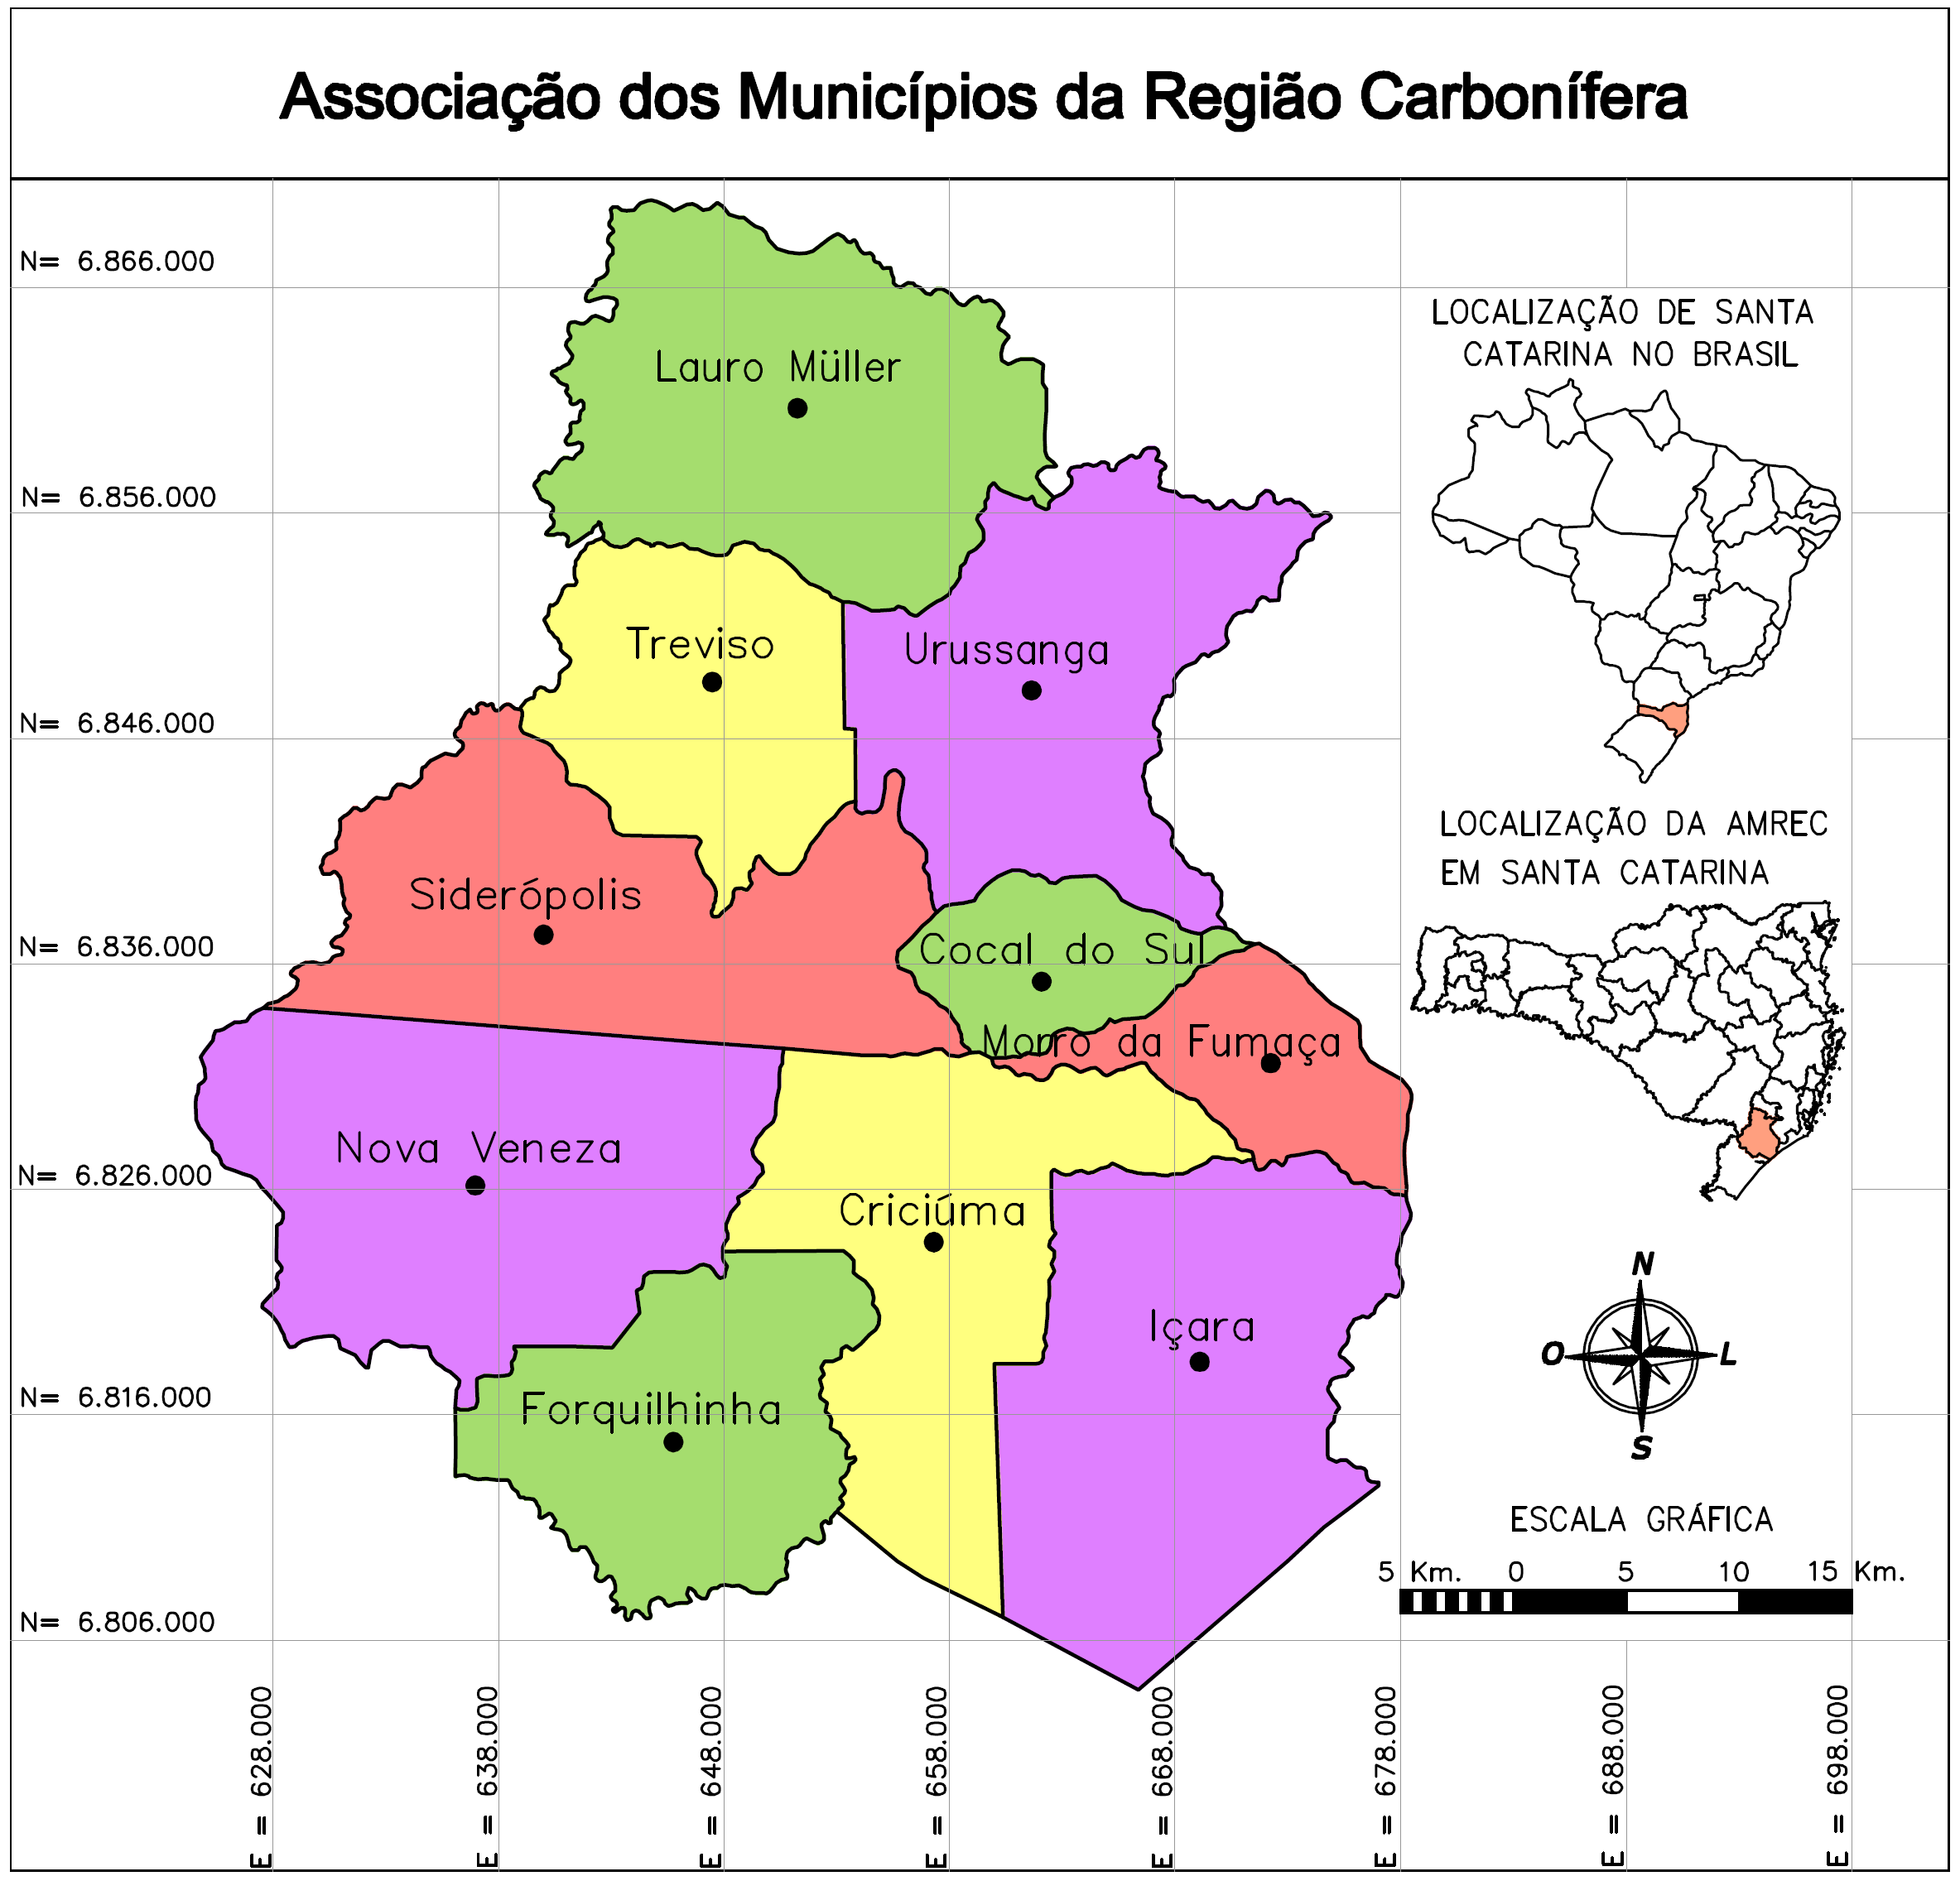 Figura 1: Mapa da Região Carbonífera. Fonte: Organizado pela autora a partir de http://www.amrec.com.br/municipios/index.